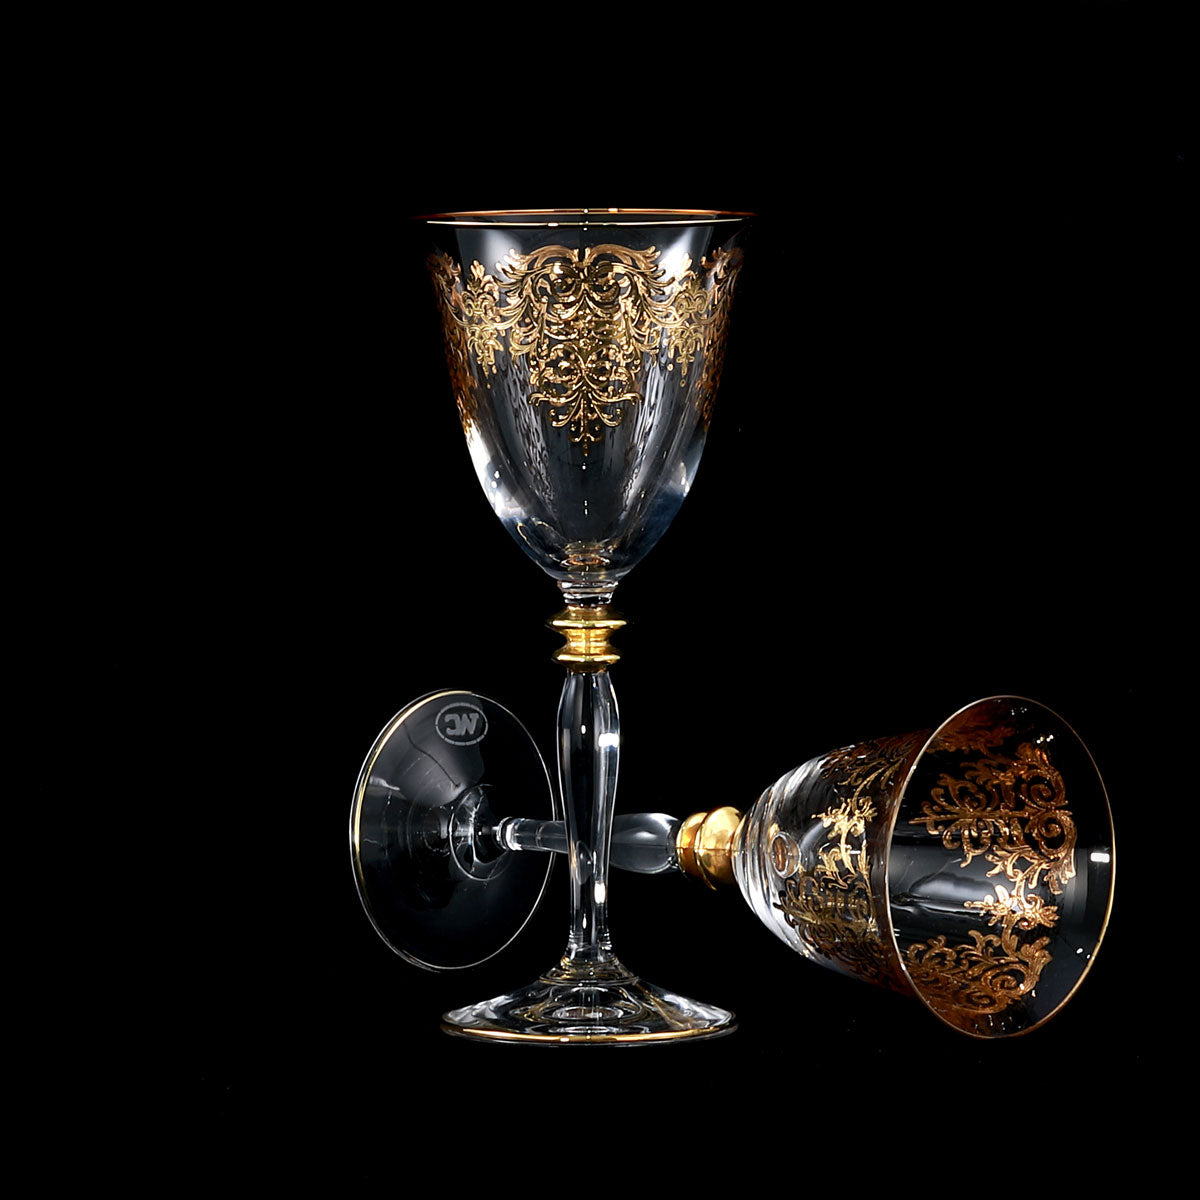 Servizio bicchieri in cristallo con piatti in fine porcellana coordinati in oro prestigiosi